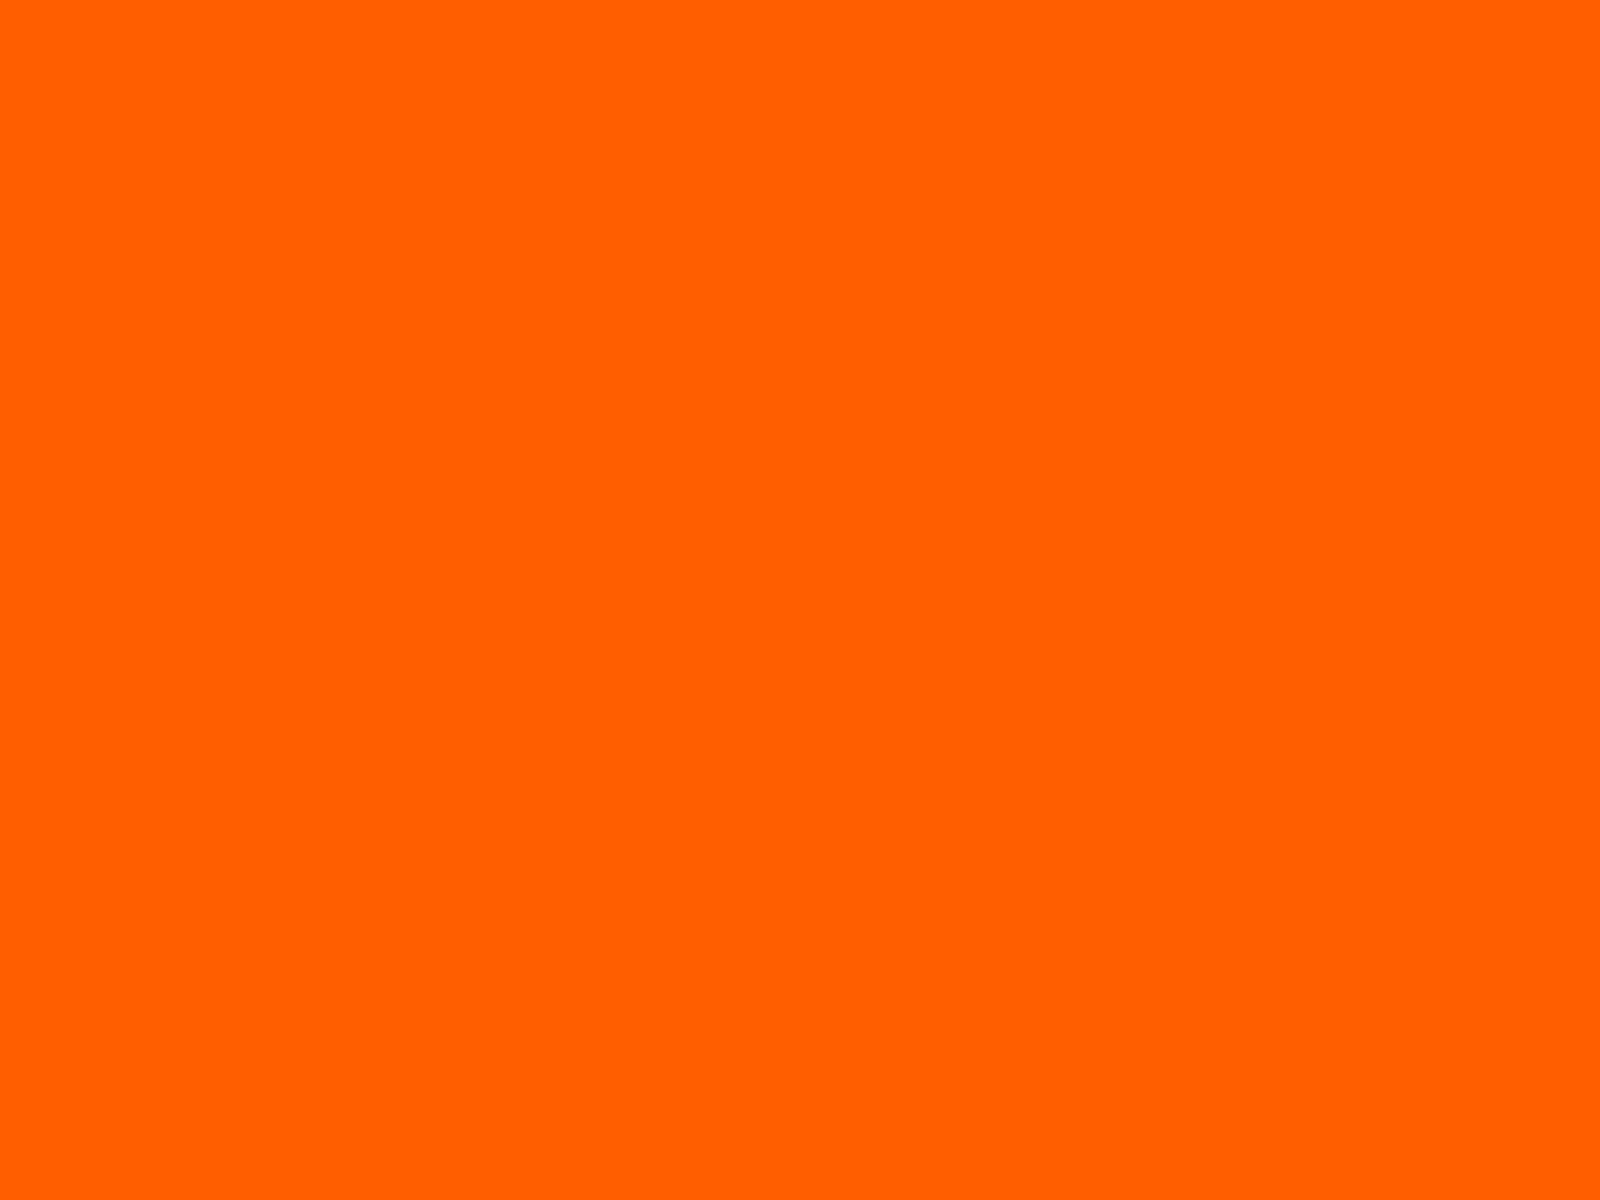 Orange (Color) | Symbolism Wiki | FANDOM powered by Wikia